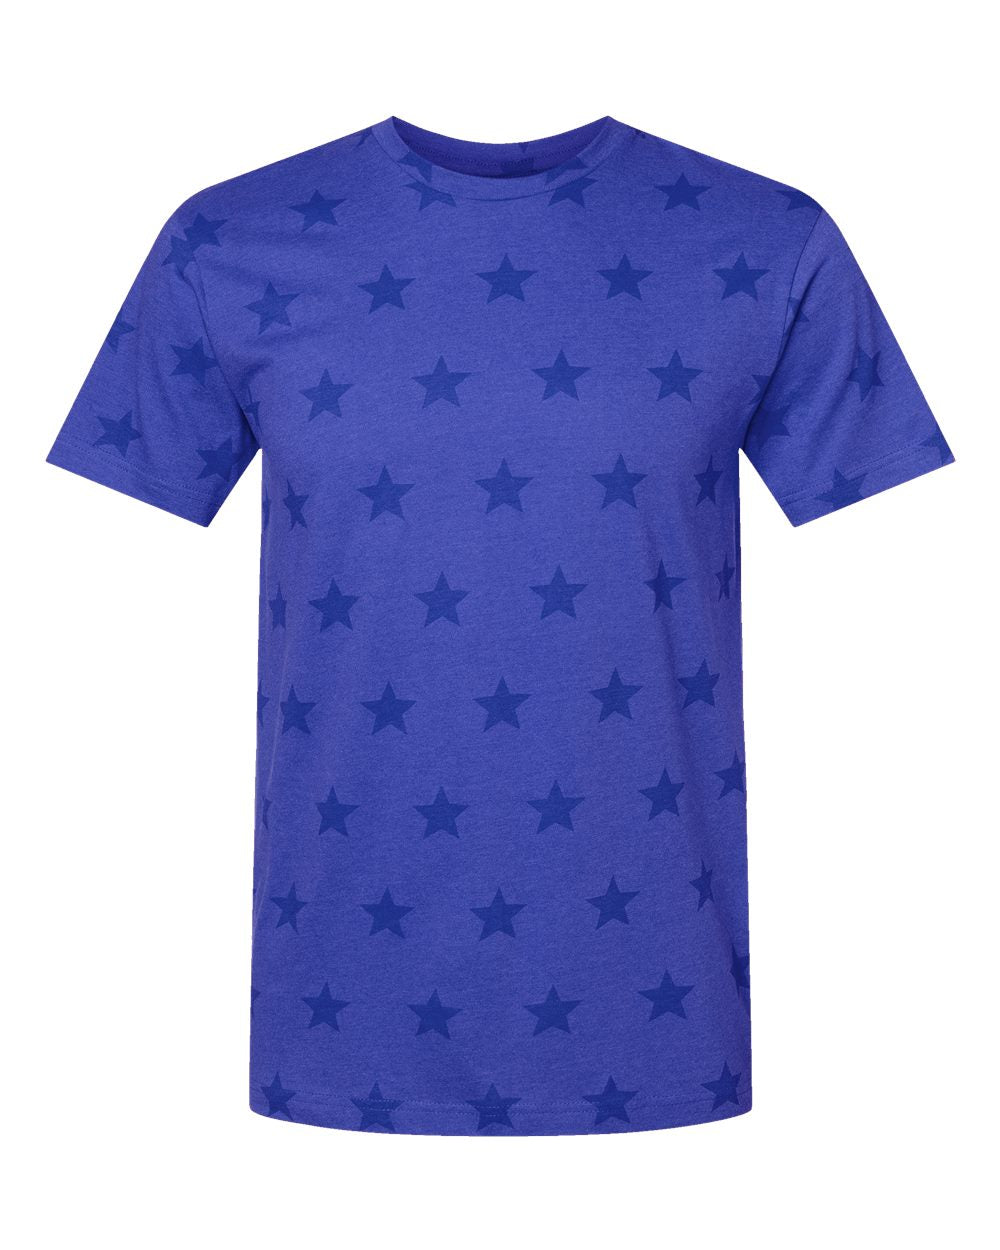 "Build A Tee" Star Print Short Sleeve Blank T-Shirt